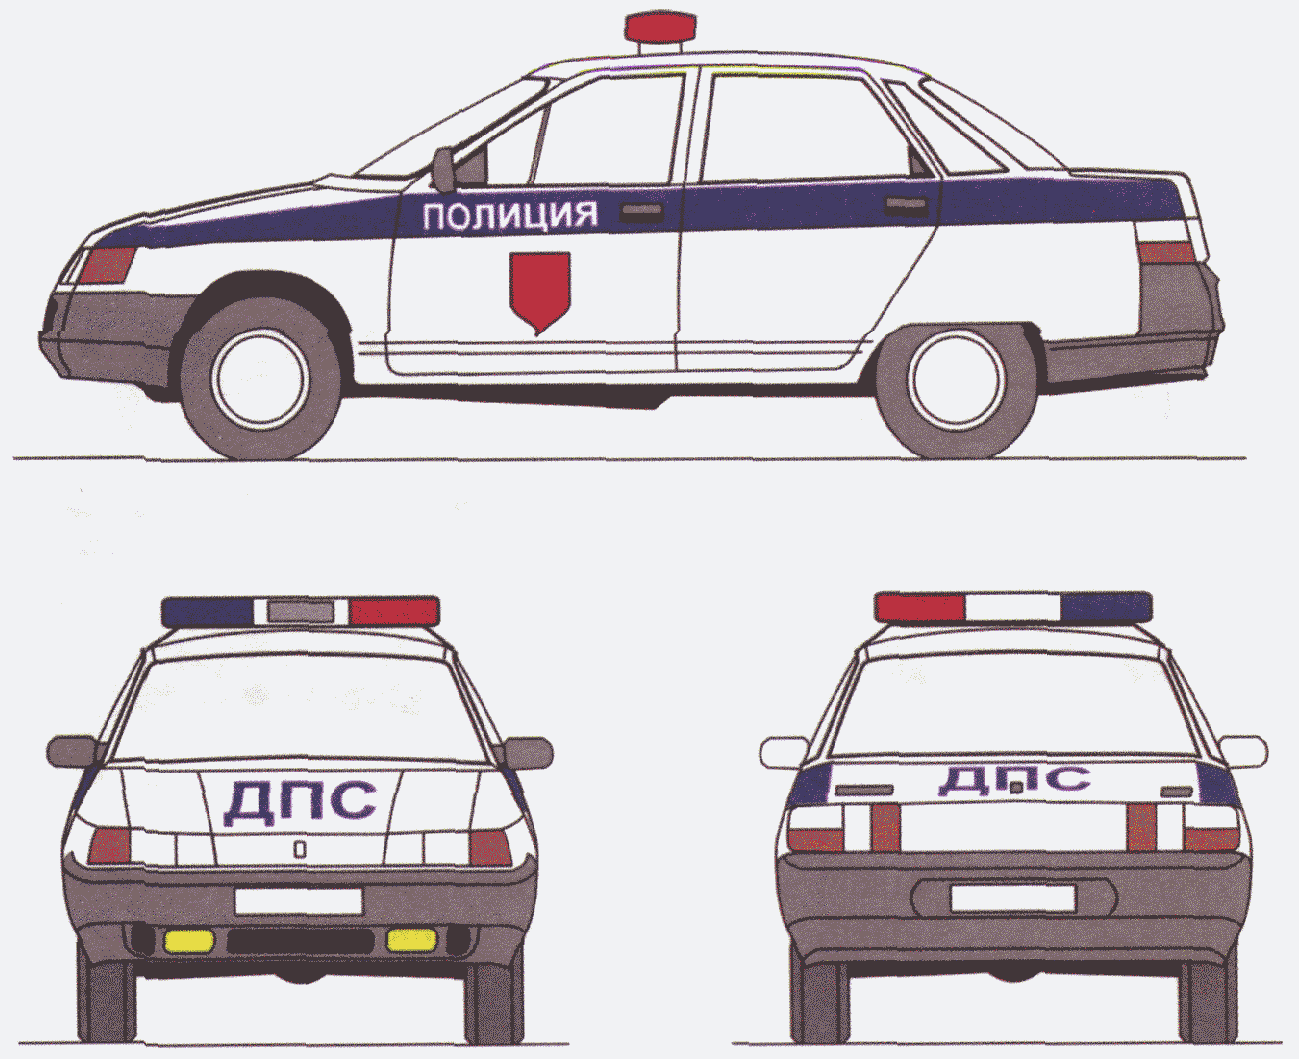 Цветографические схемы полиции США